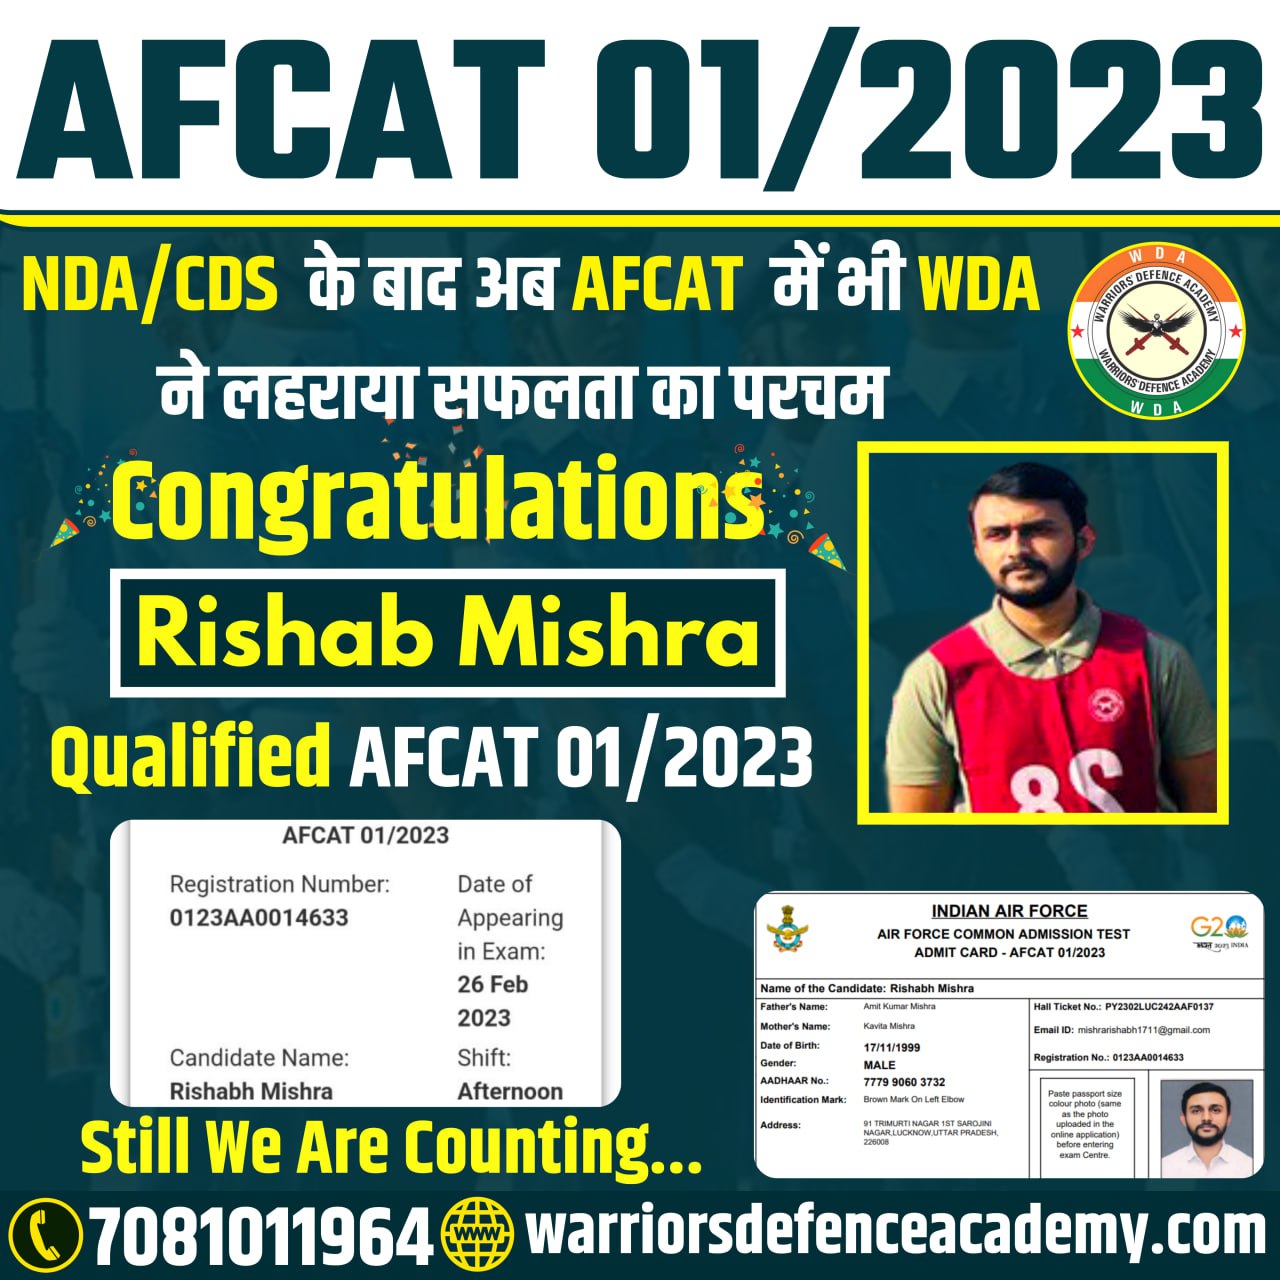 Best NDA Academy in Lucknow | Best NDA Coaching in Lucknow, India | Warriors Defence Academy | Best NDA Coaching in Lucknow